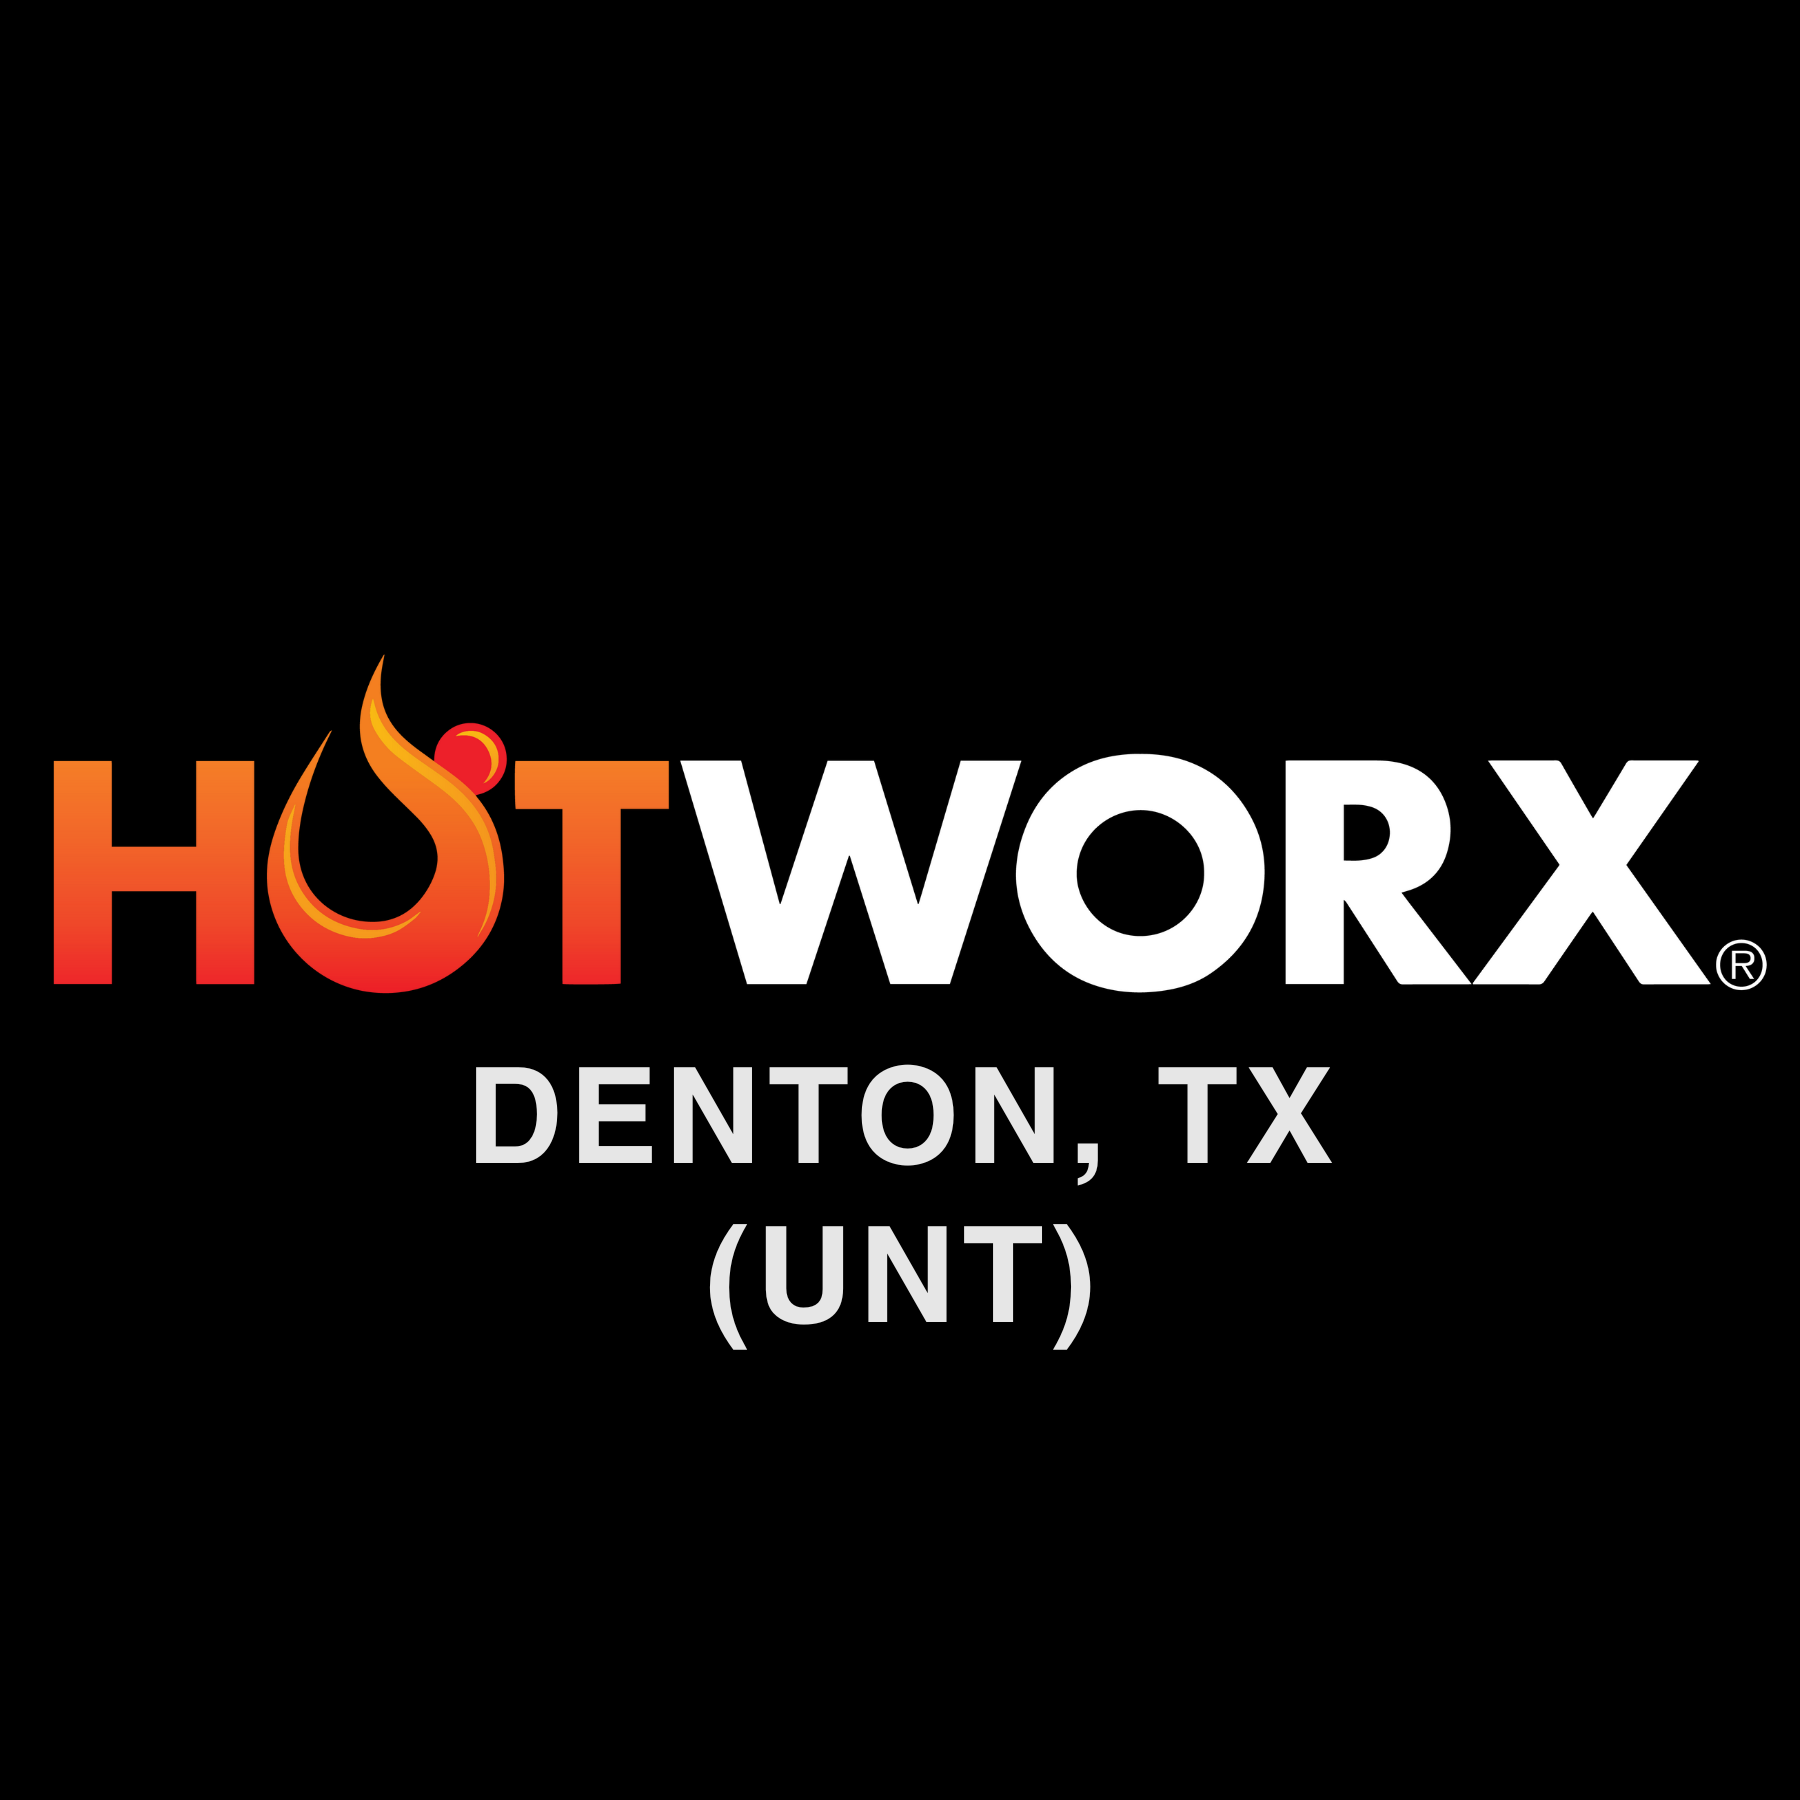 New Hotworx studio combines infrared sauna, fitness 